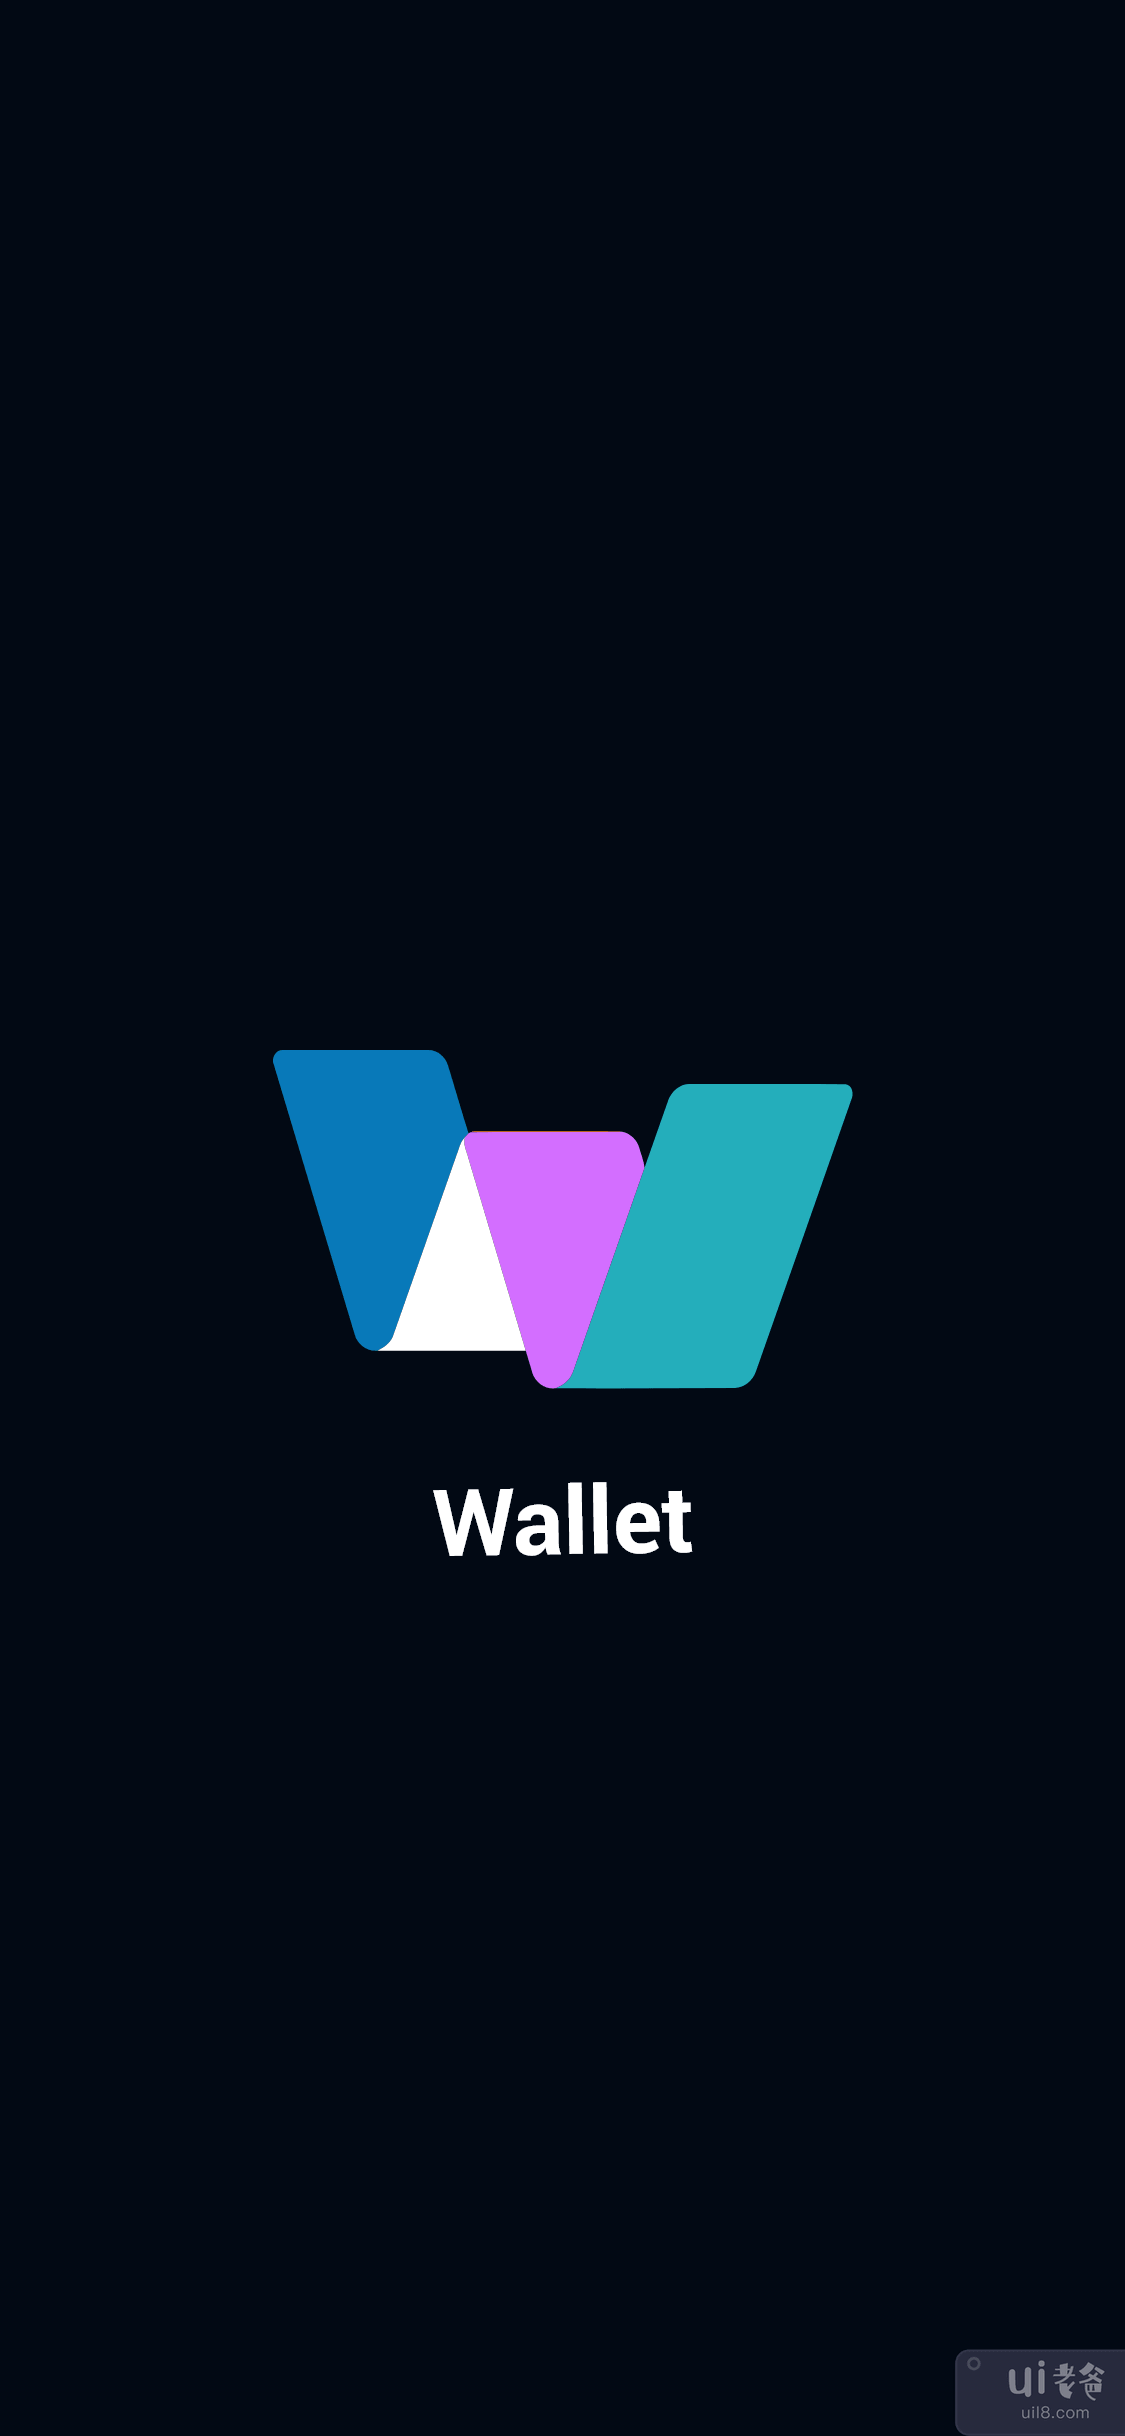 Wallet Mobile App Ui Kit - 金融加密货币钱包(Wallet Mobile App Ui Kit - Finance Cryptocurrency Wallets)插图3